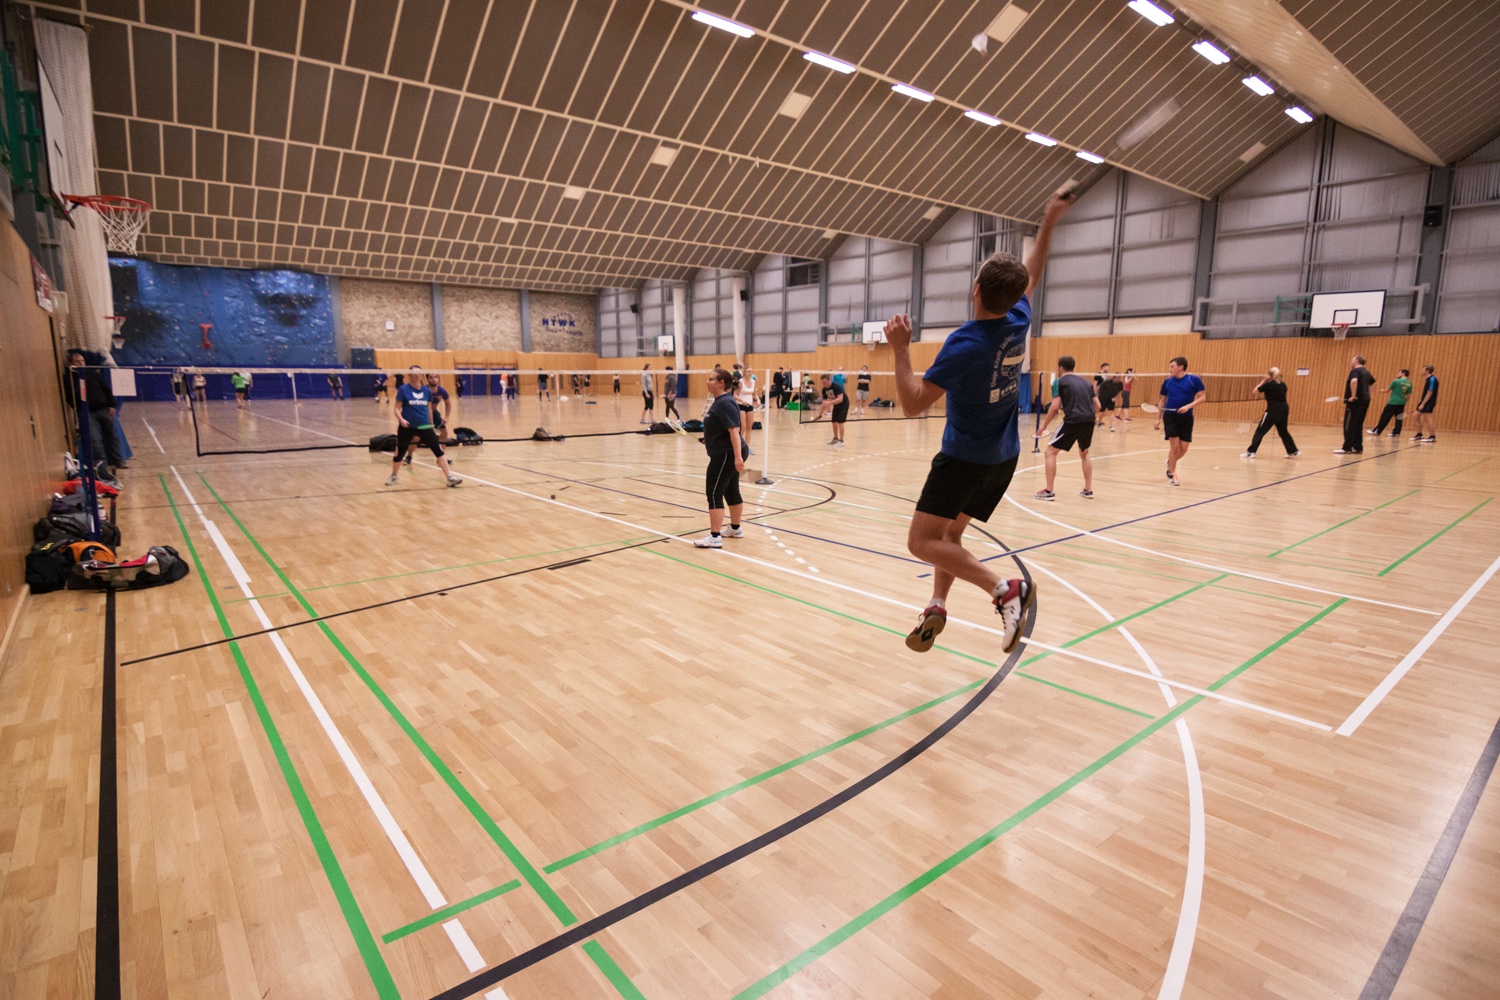 In einer Sporthalle spielen auf mehrenen Feldern Studenten Badminton. Im Vordergrund springt ein Spieler in die Luft um den Badmintonball zu treffen.